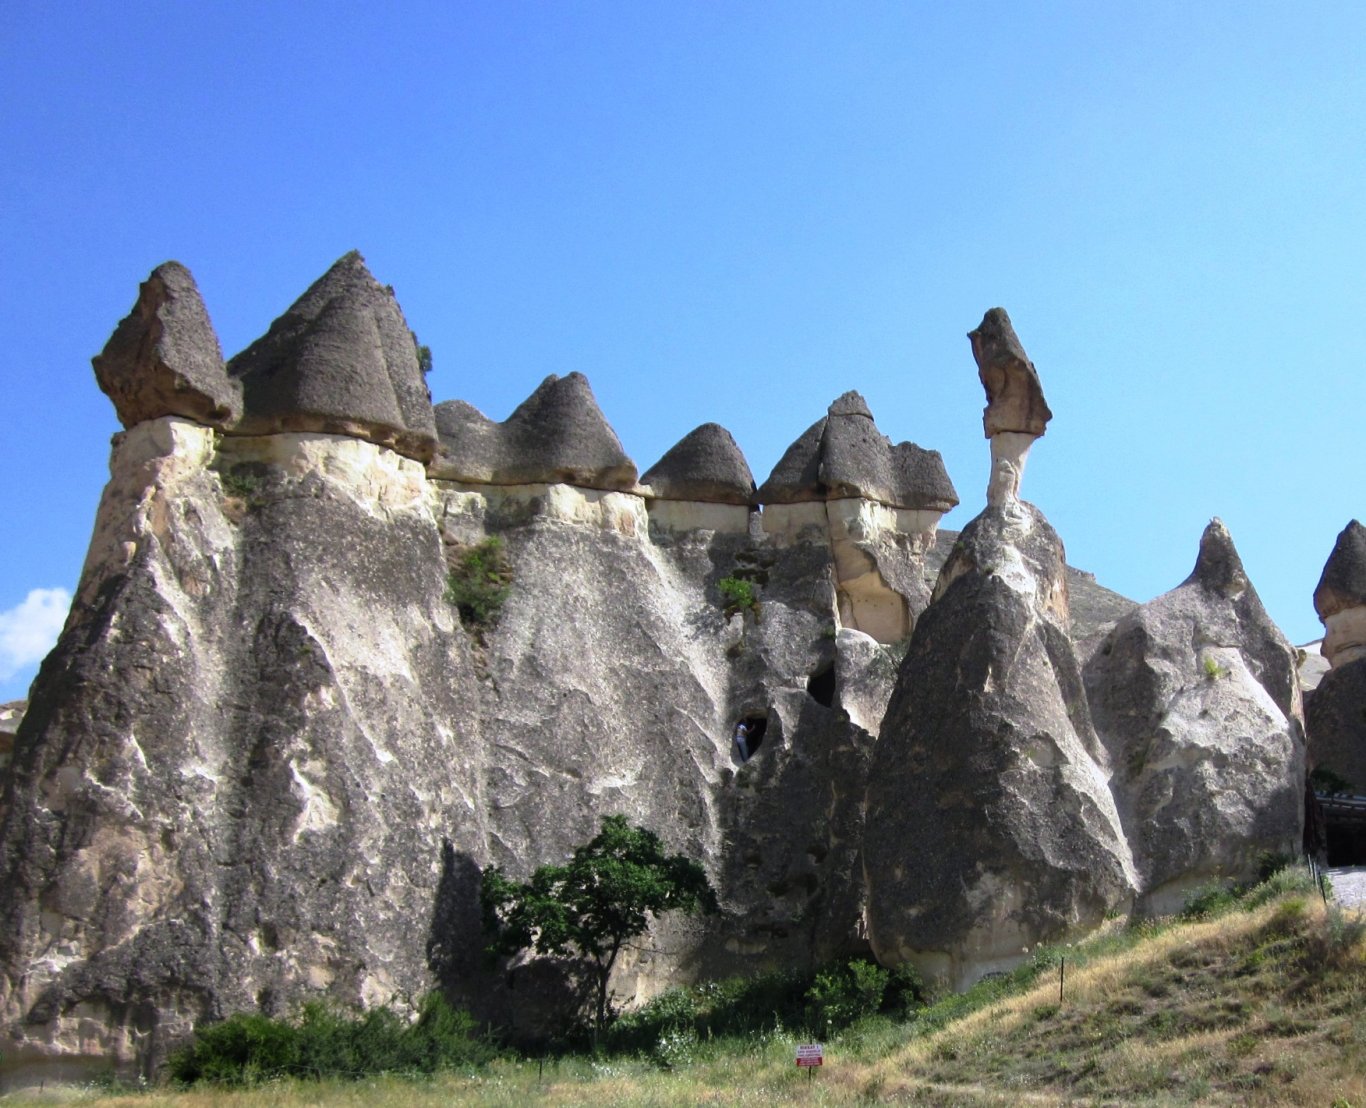 The history of Cappadocia